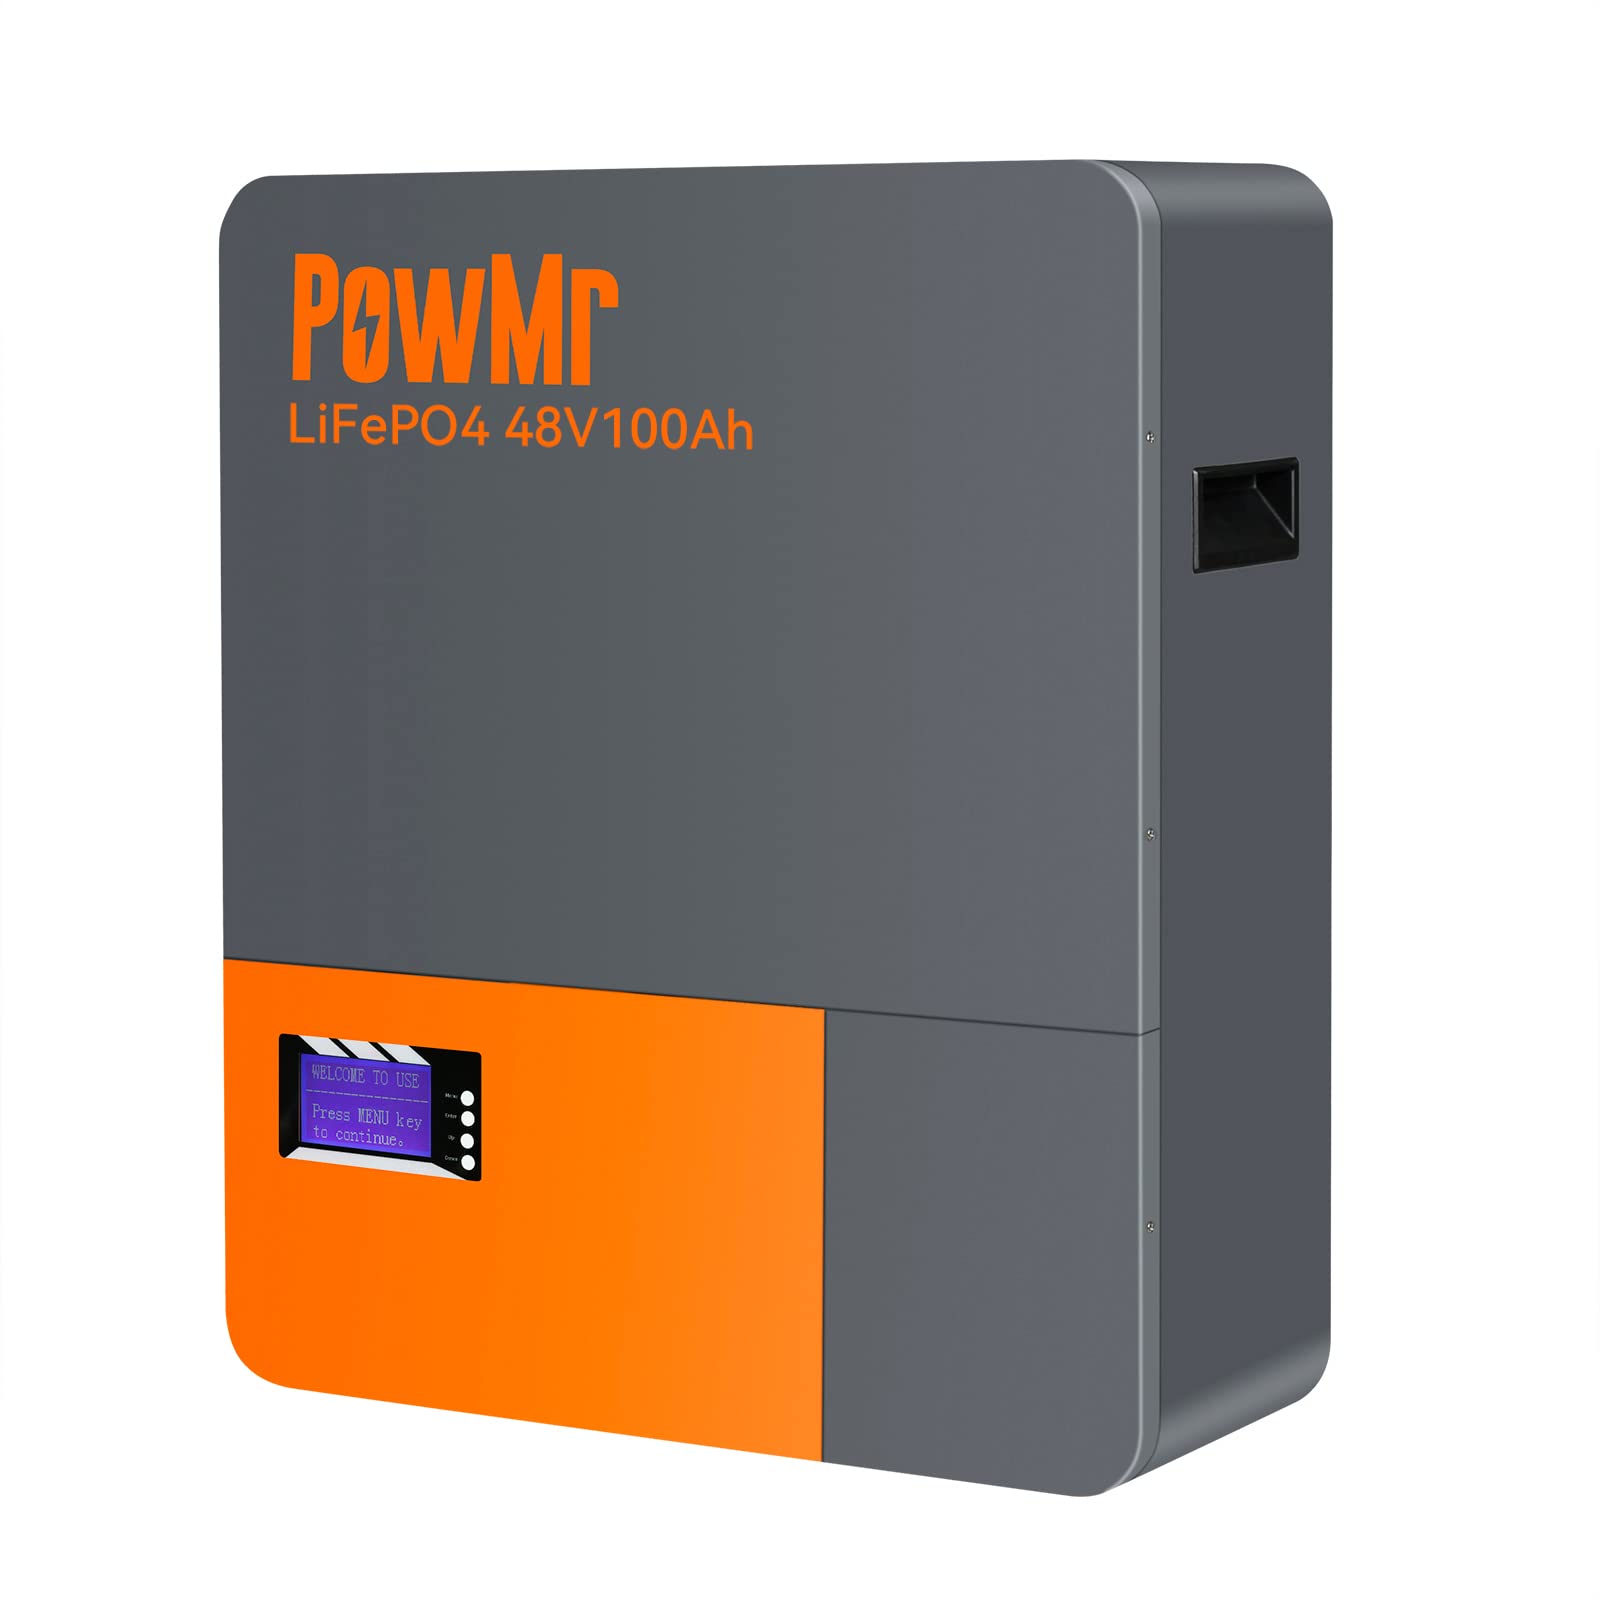 PowMr 48V 100Ah Wall Mounted LiFePO4 Akku, Max. 4,8kWh Lithium Batterie mit 100A BMS, Unterstützt 4000+ Zyklen, Neue Wandmontierte Energiespeicher Batterie Für Solar- und PV-, Hausstromversorgung usw von PowMr